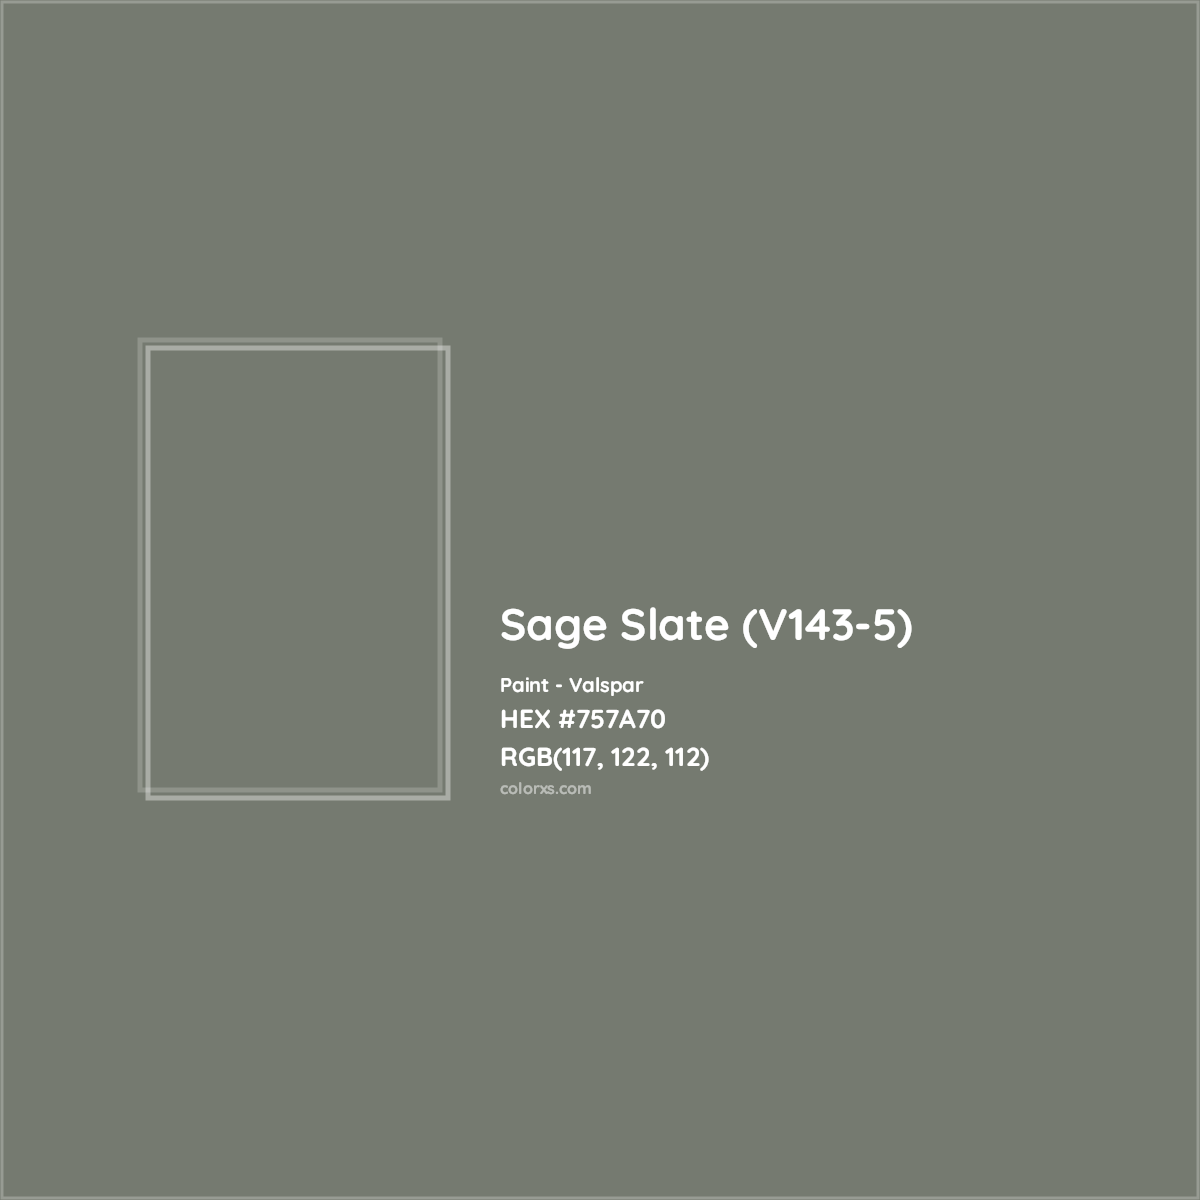 HEX #757A70 Sage Slate (V143-5) Paint Valspar - Color Code